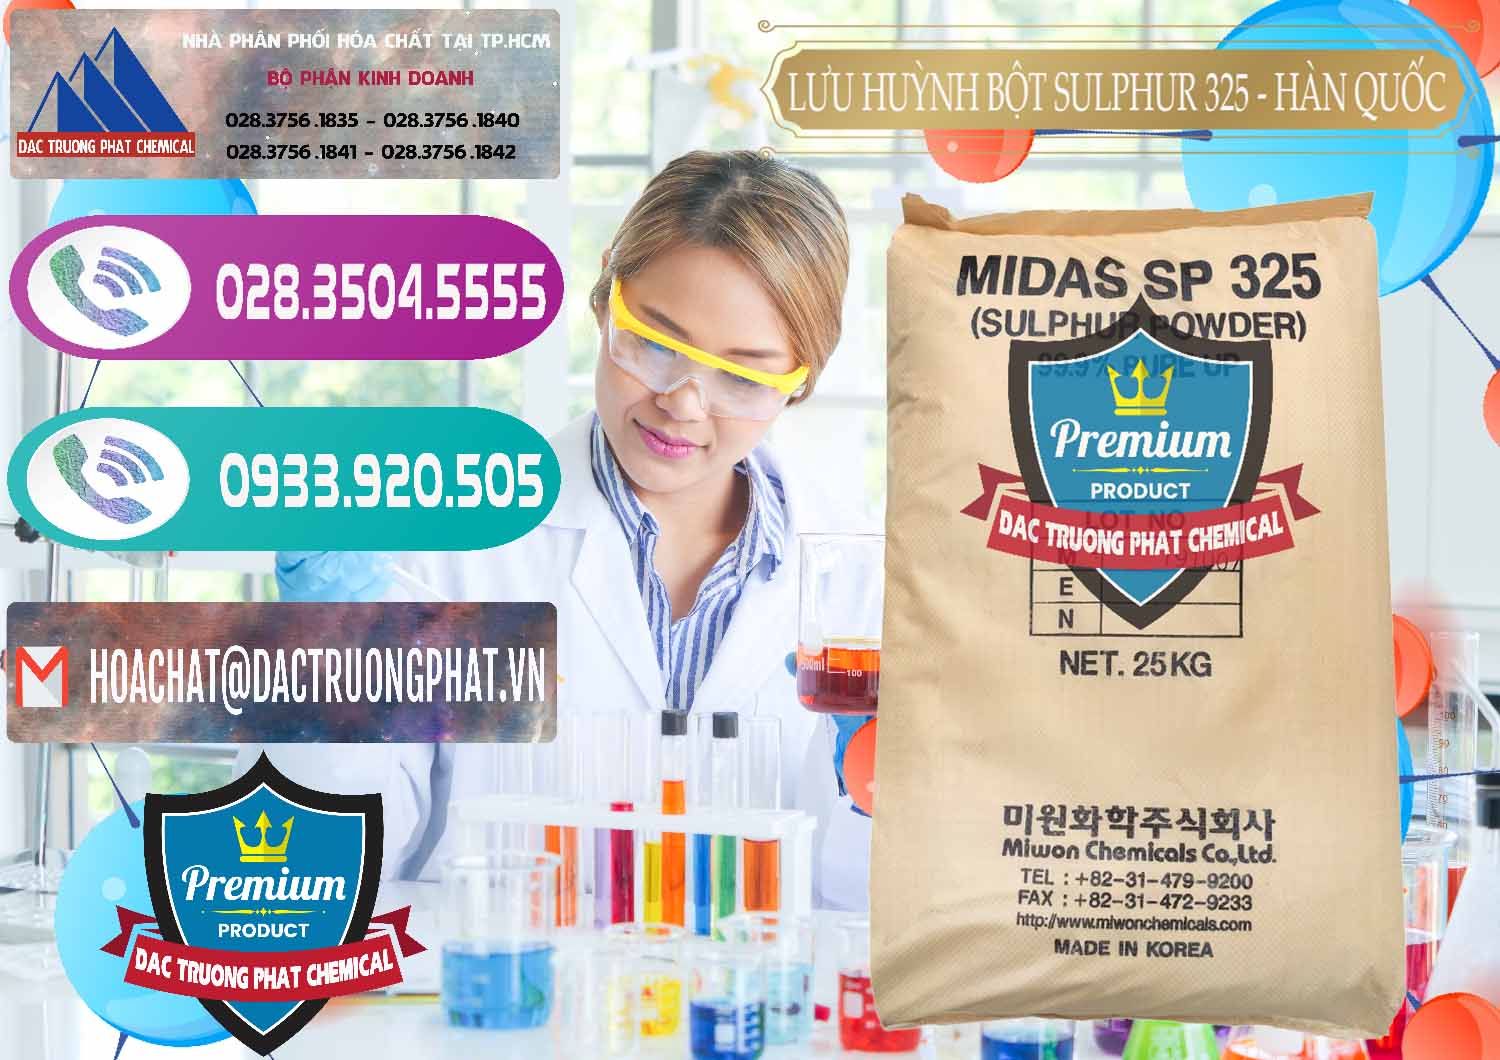 Nơi chuyên phân phối ( bán ) Lưu huỳnh Bột - Sulfur Powder Midas SP 325 Hàn Quốc Korea - 0198 - Cty chuyên bán ( phân phối ) hóa chất tại TP.HCM - hoachatxulynuoc.com